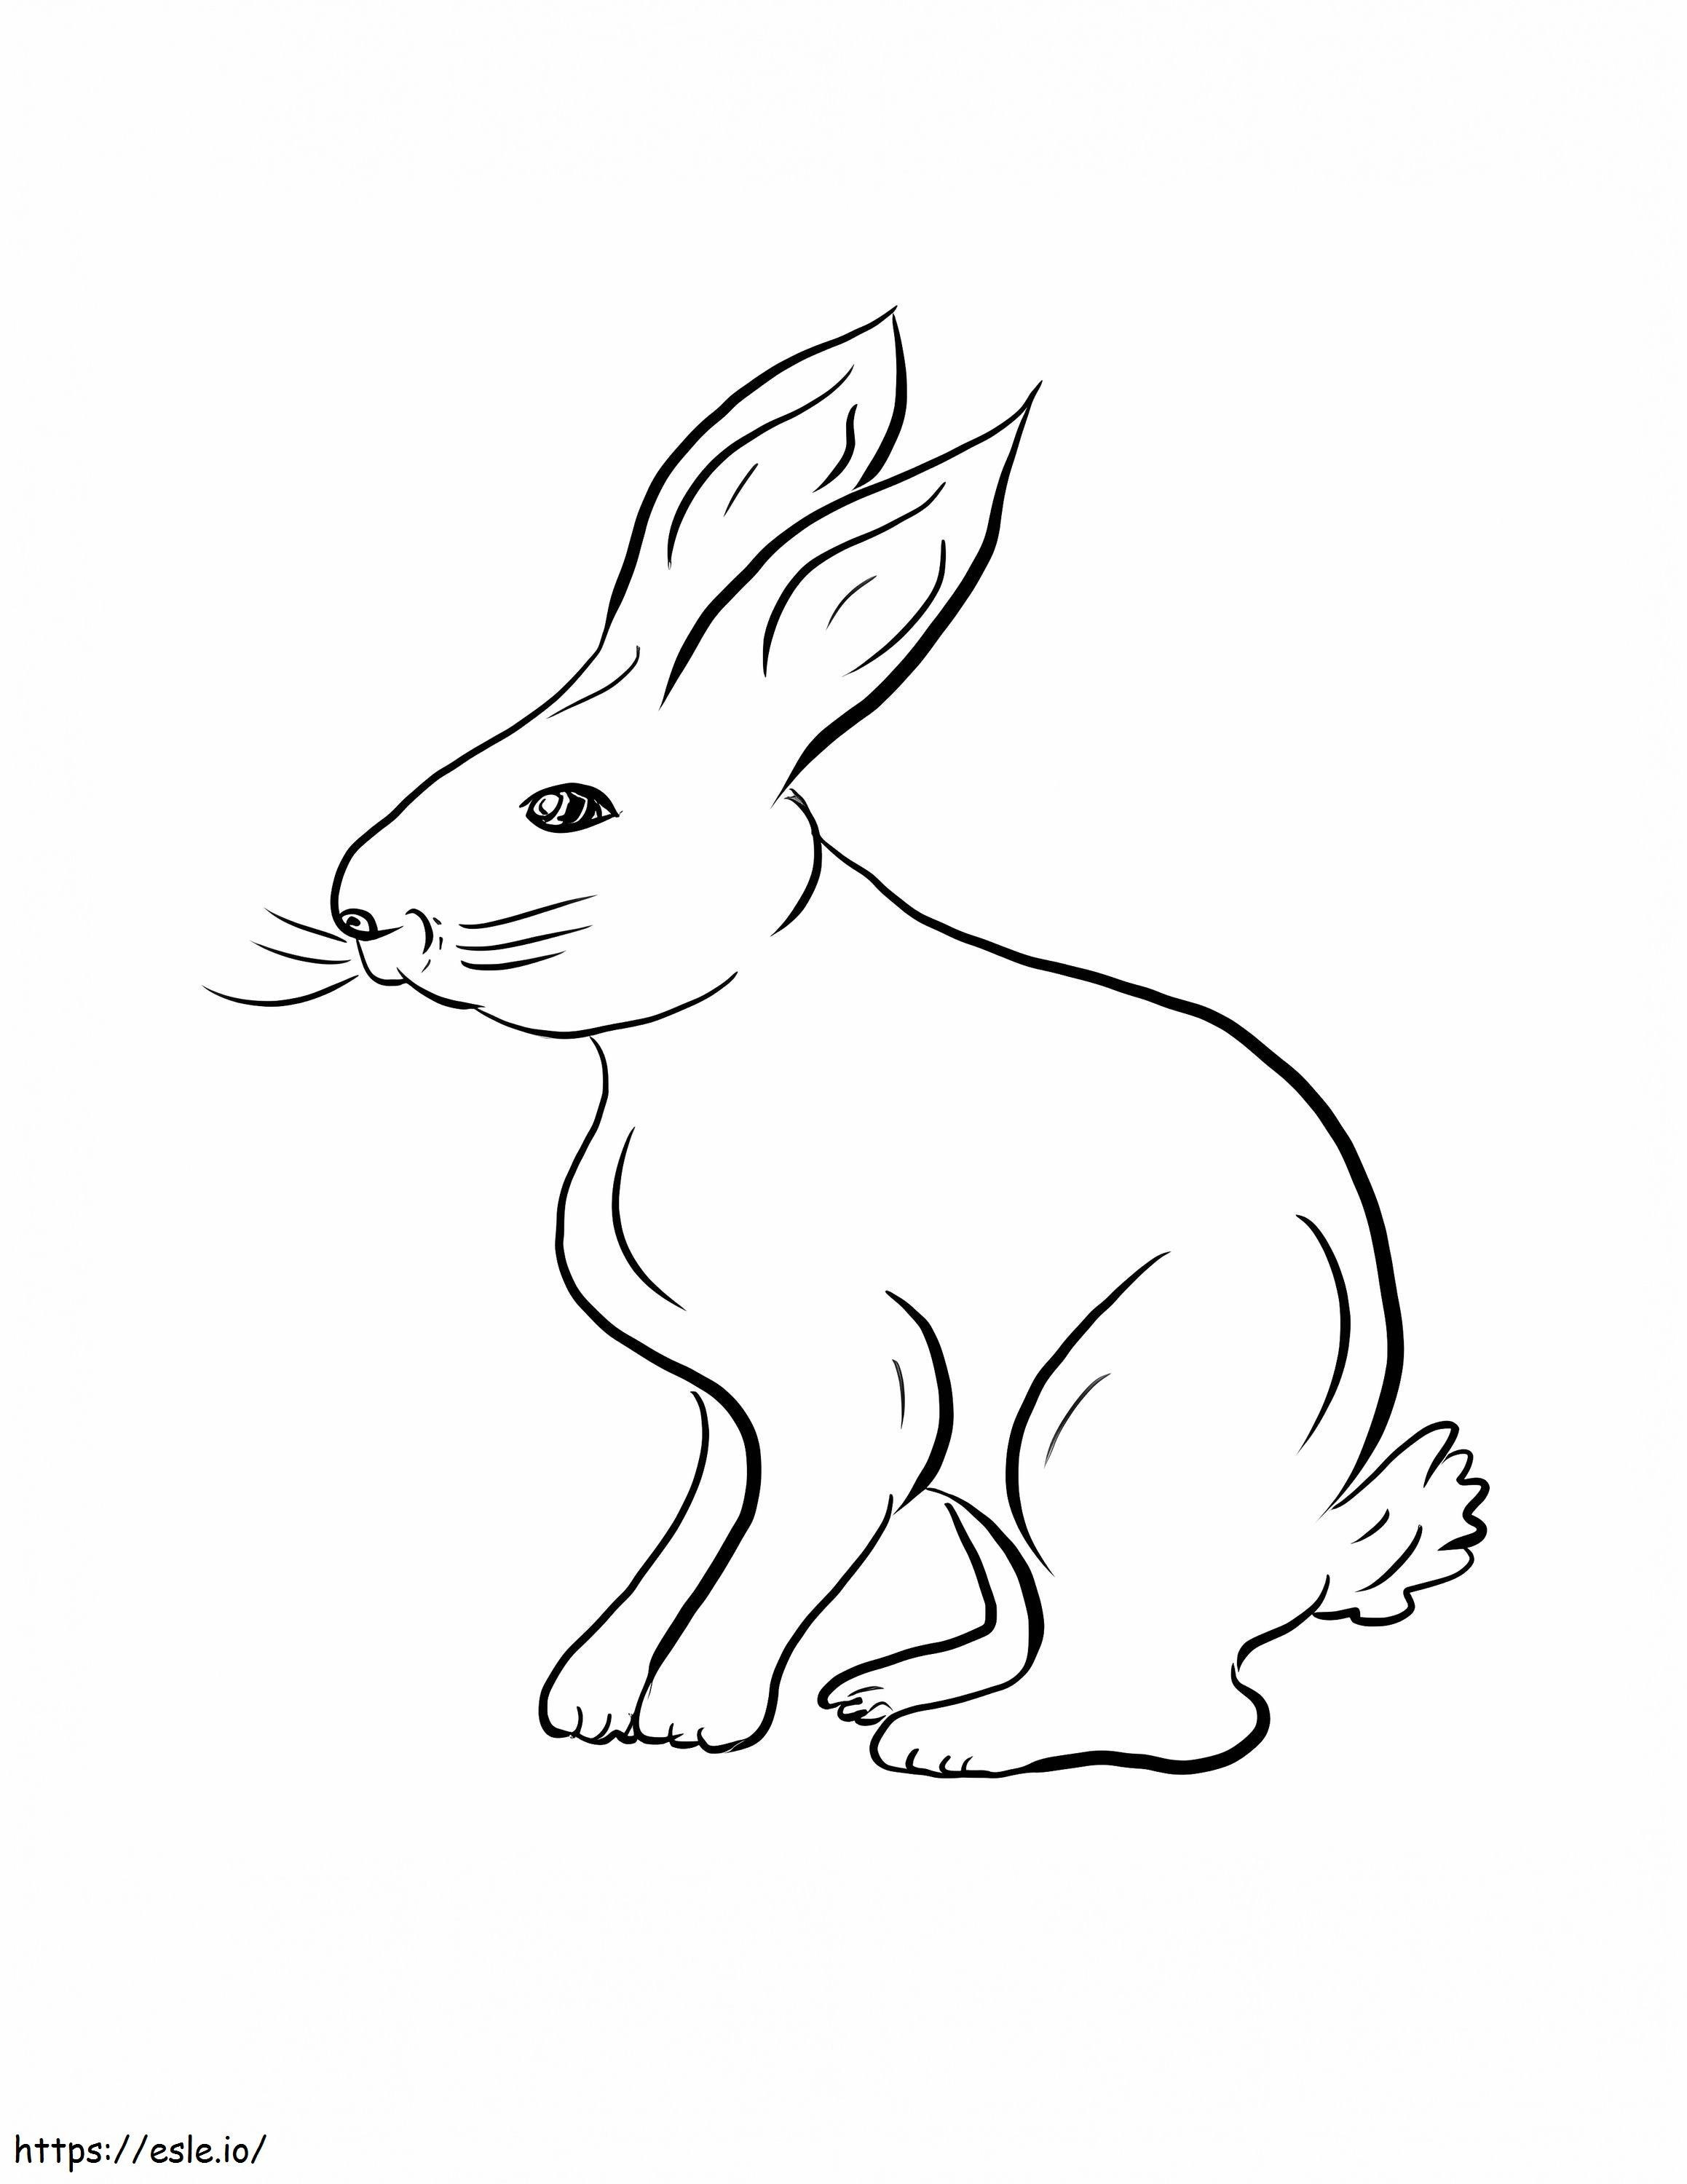 Tavşan Çizimi boyama